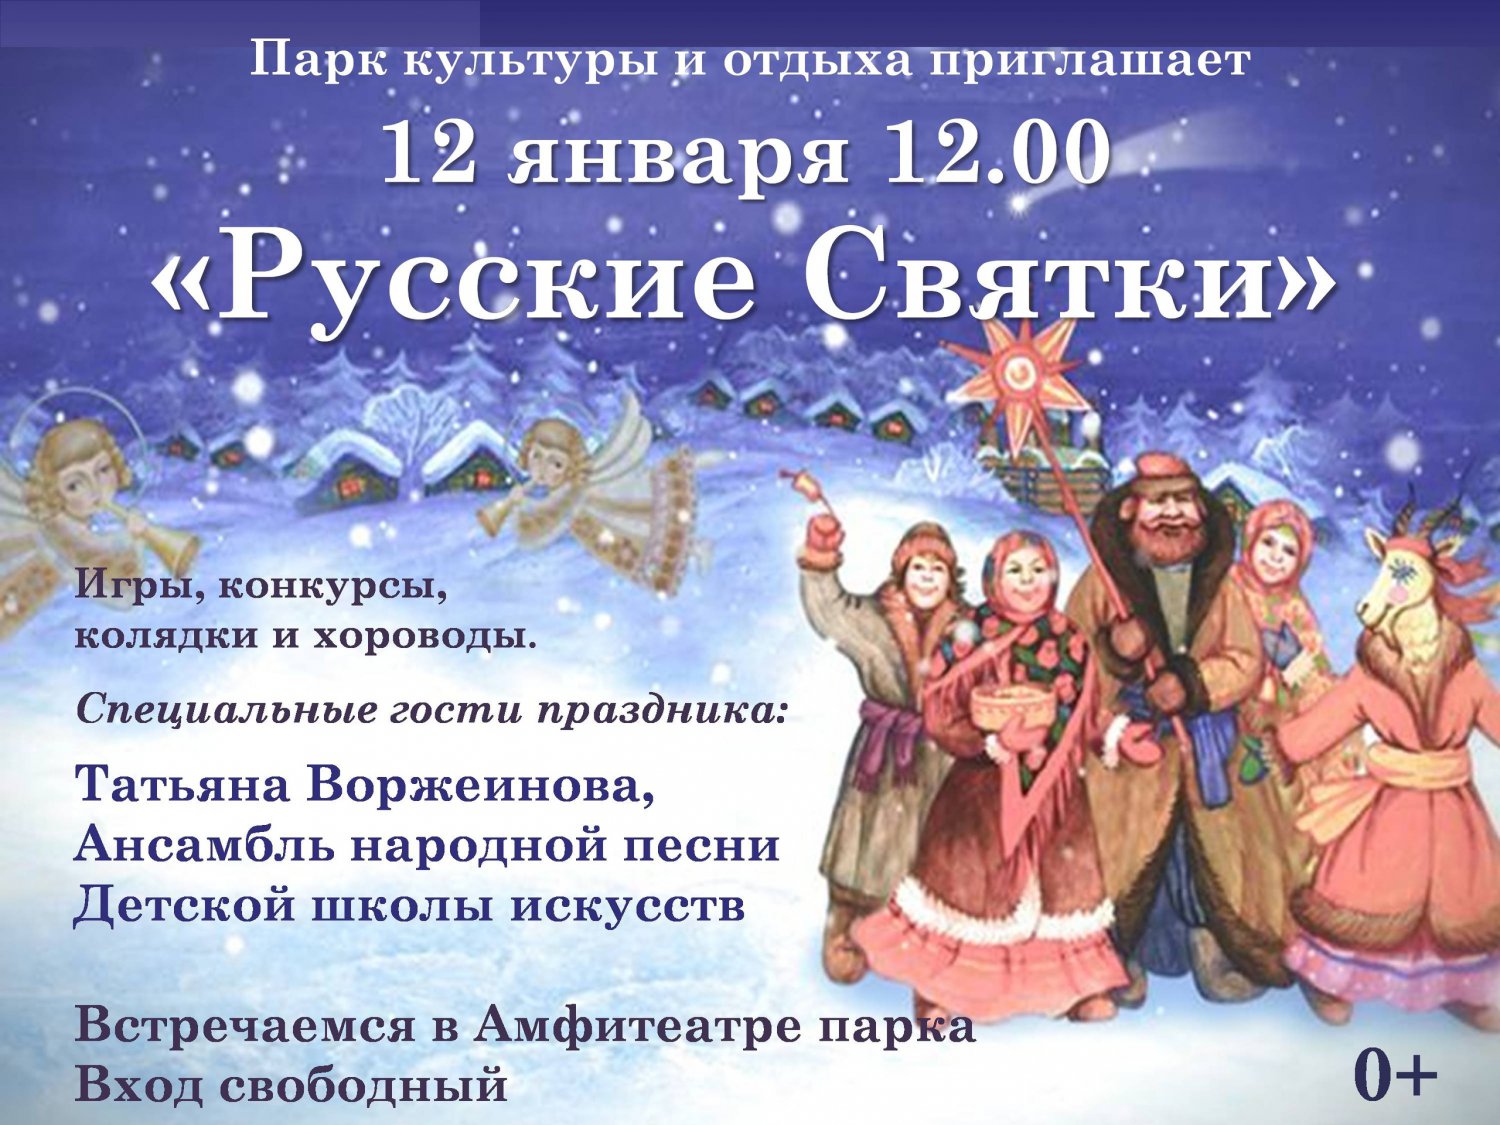 Праздничная программа «Русские святки»